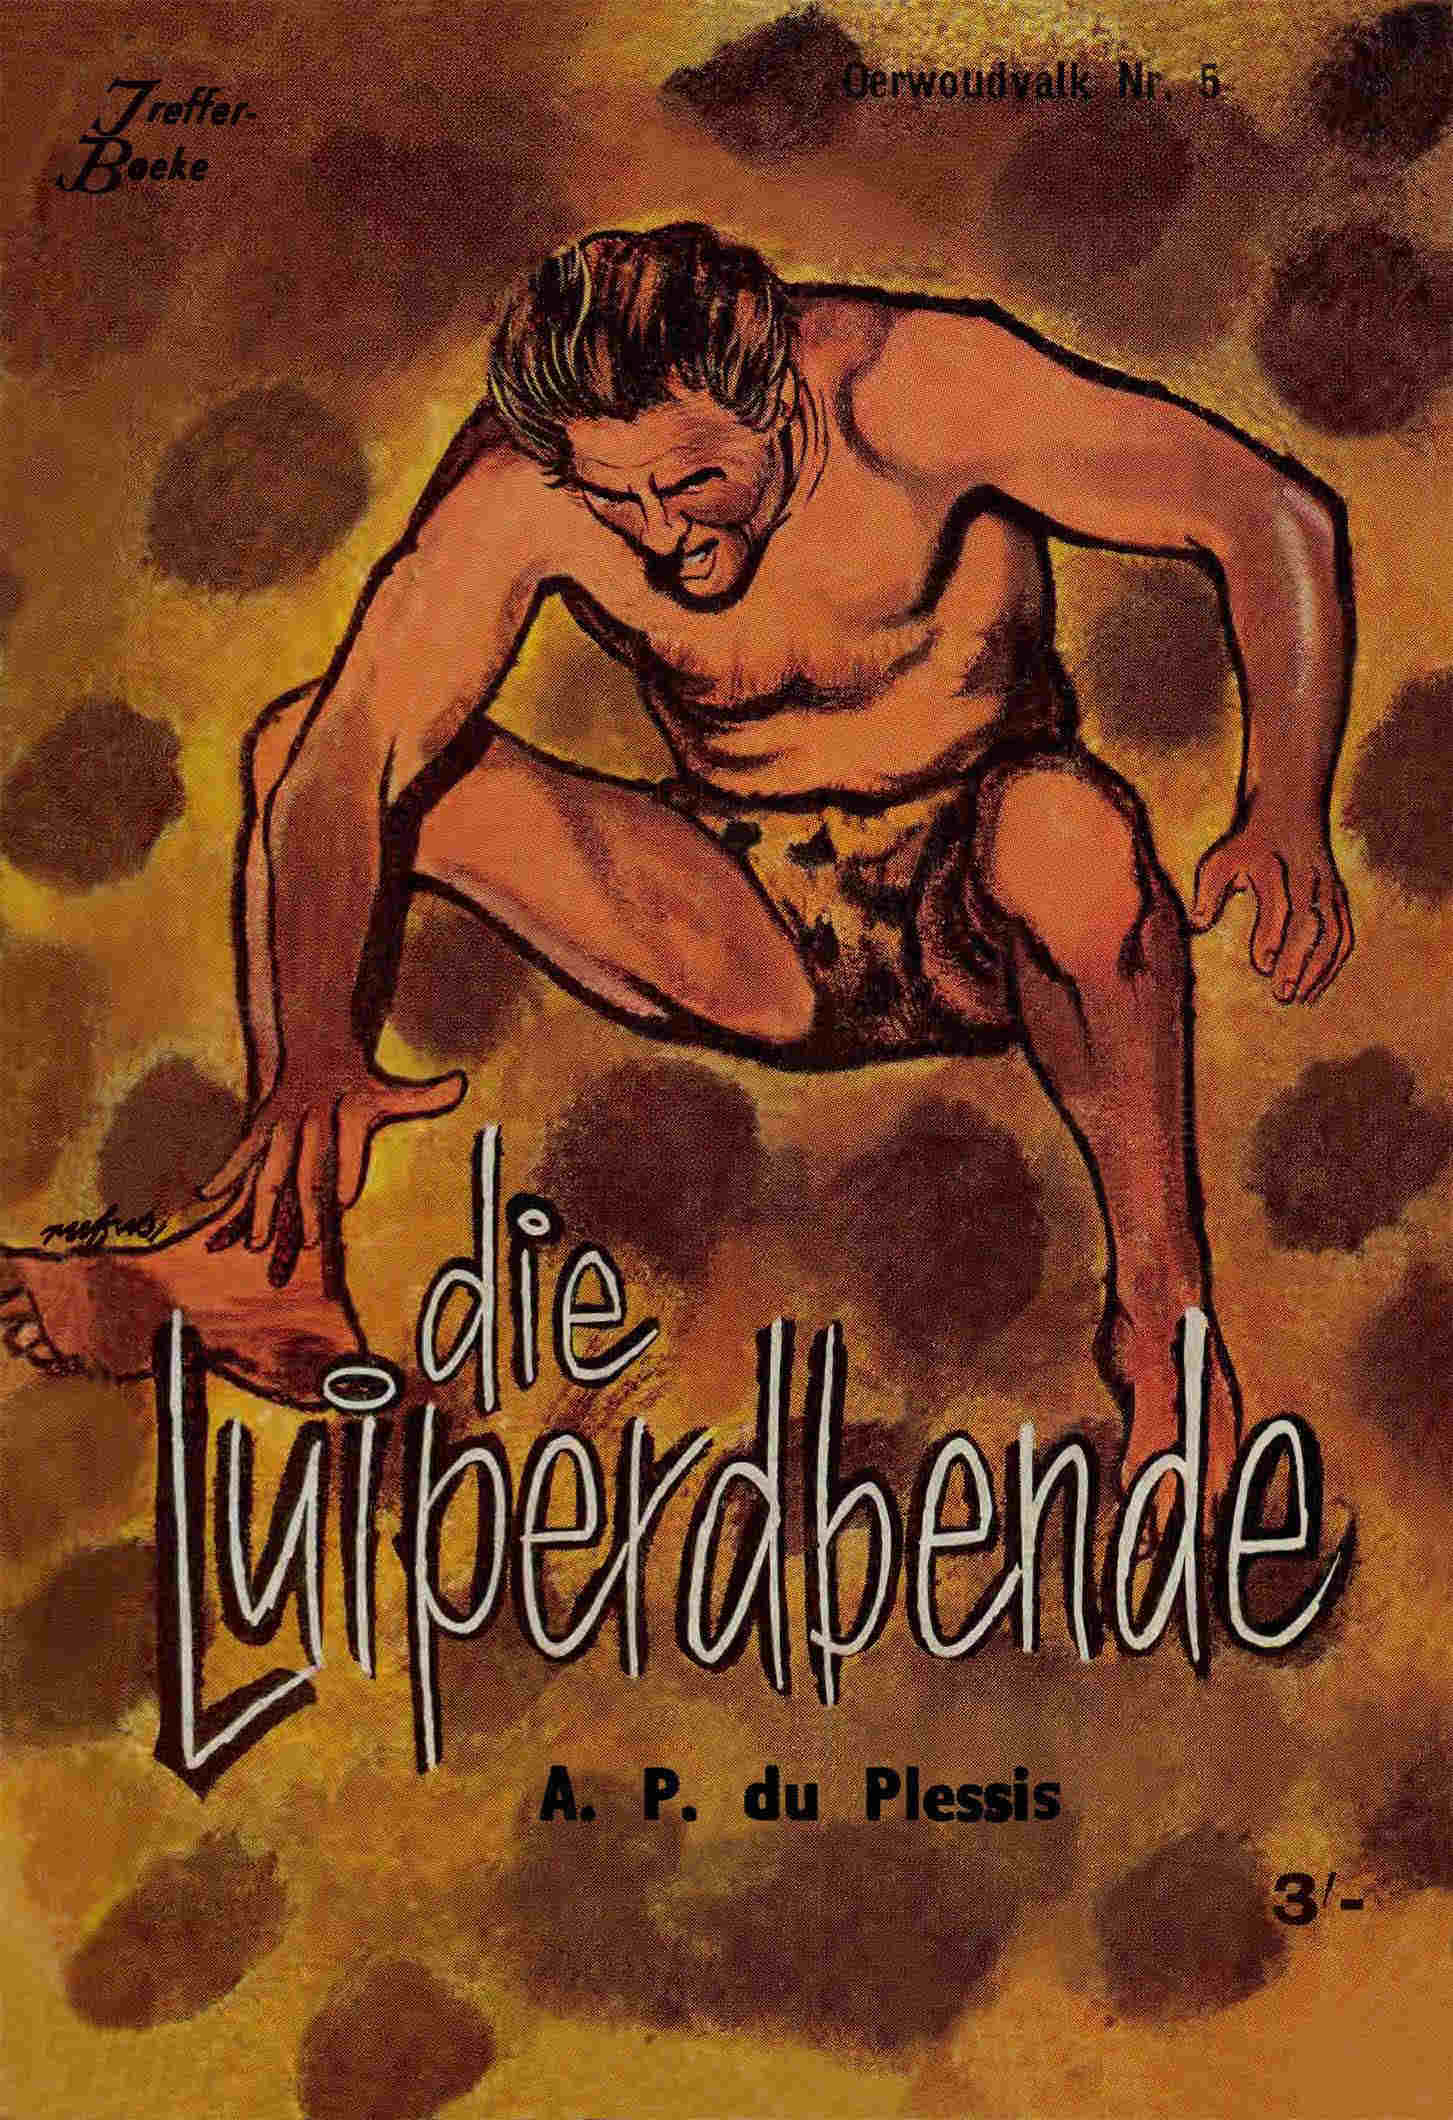 5. Die luiperdbende - A. P. du Plessis (1960)